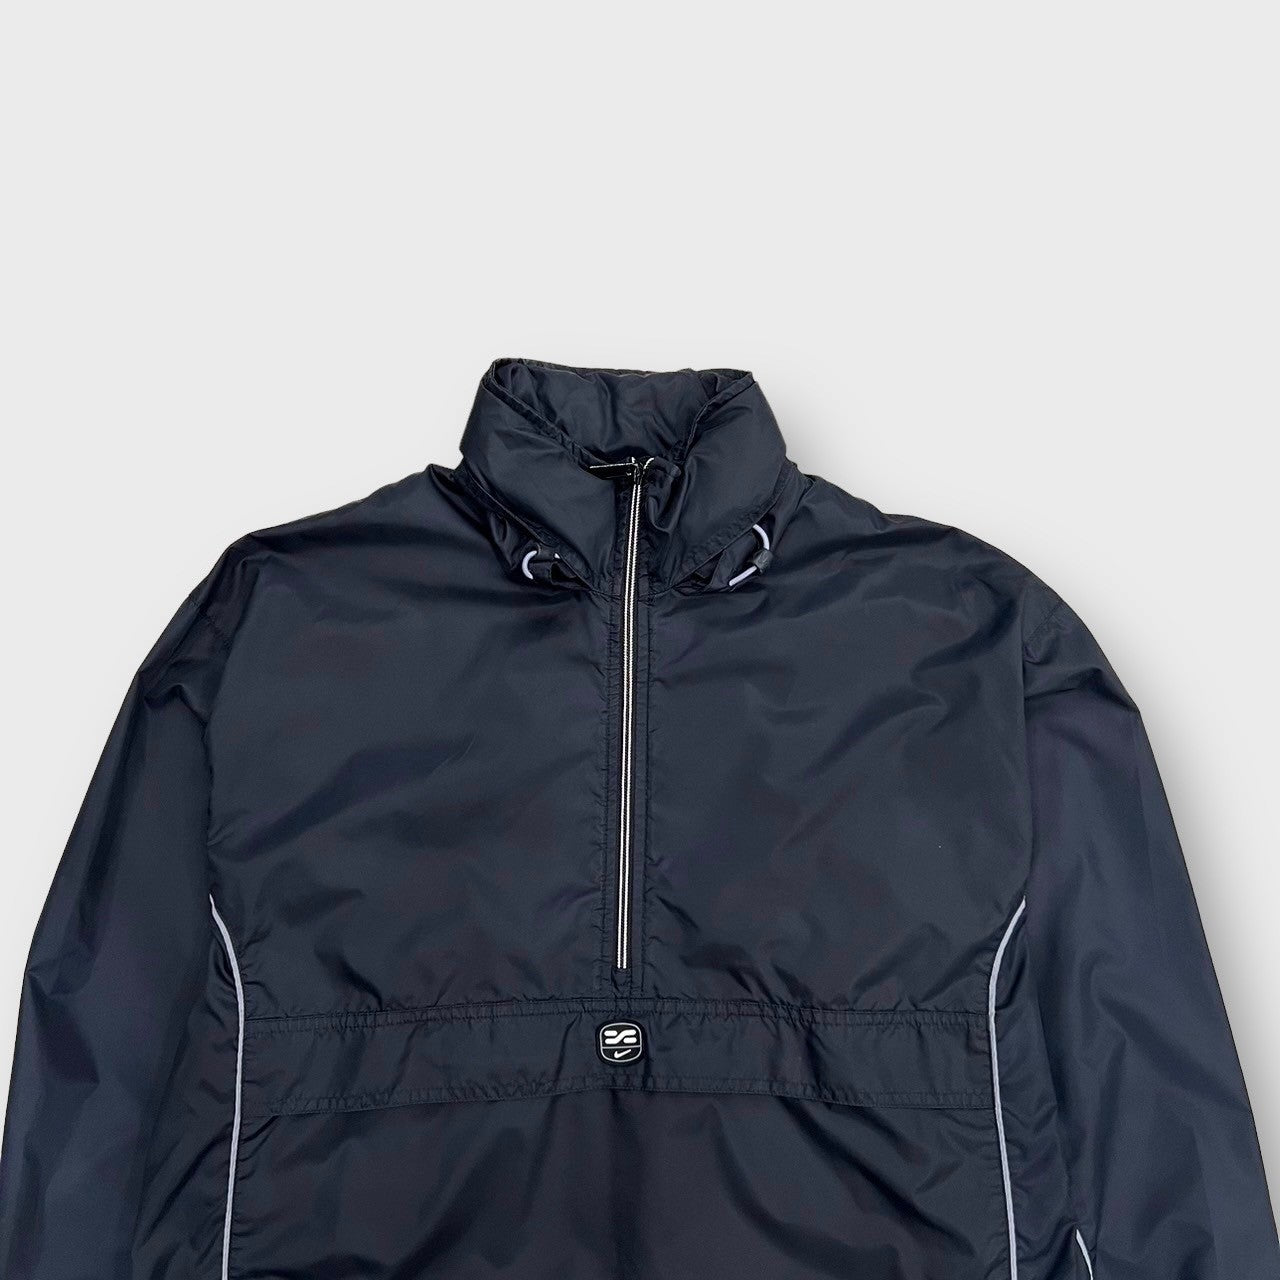 00's "NIKE"
Half zip nylon jacket